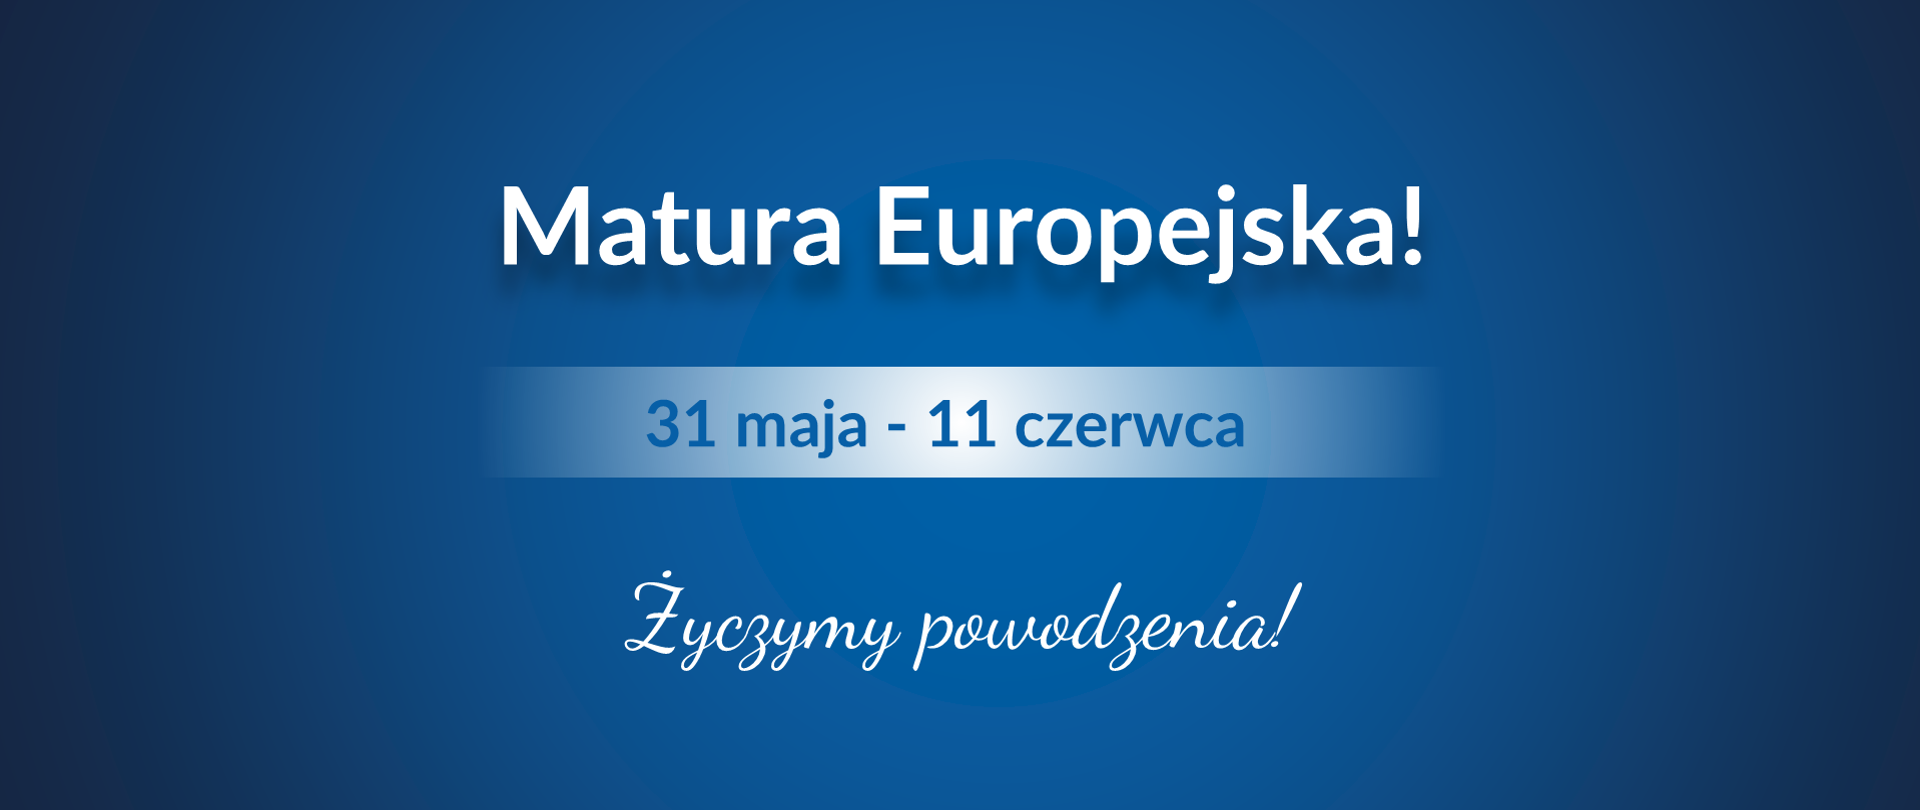 Grafika z tekstem: "31 maja - 11 czerwca – Matura Europejska! Życzymy powodzenia!"